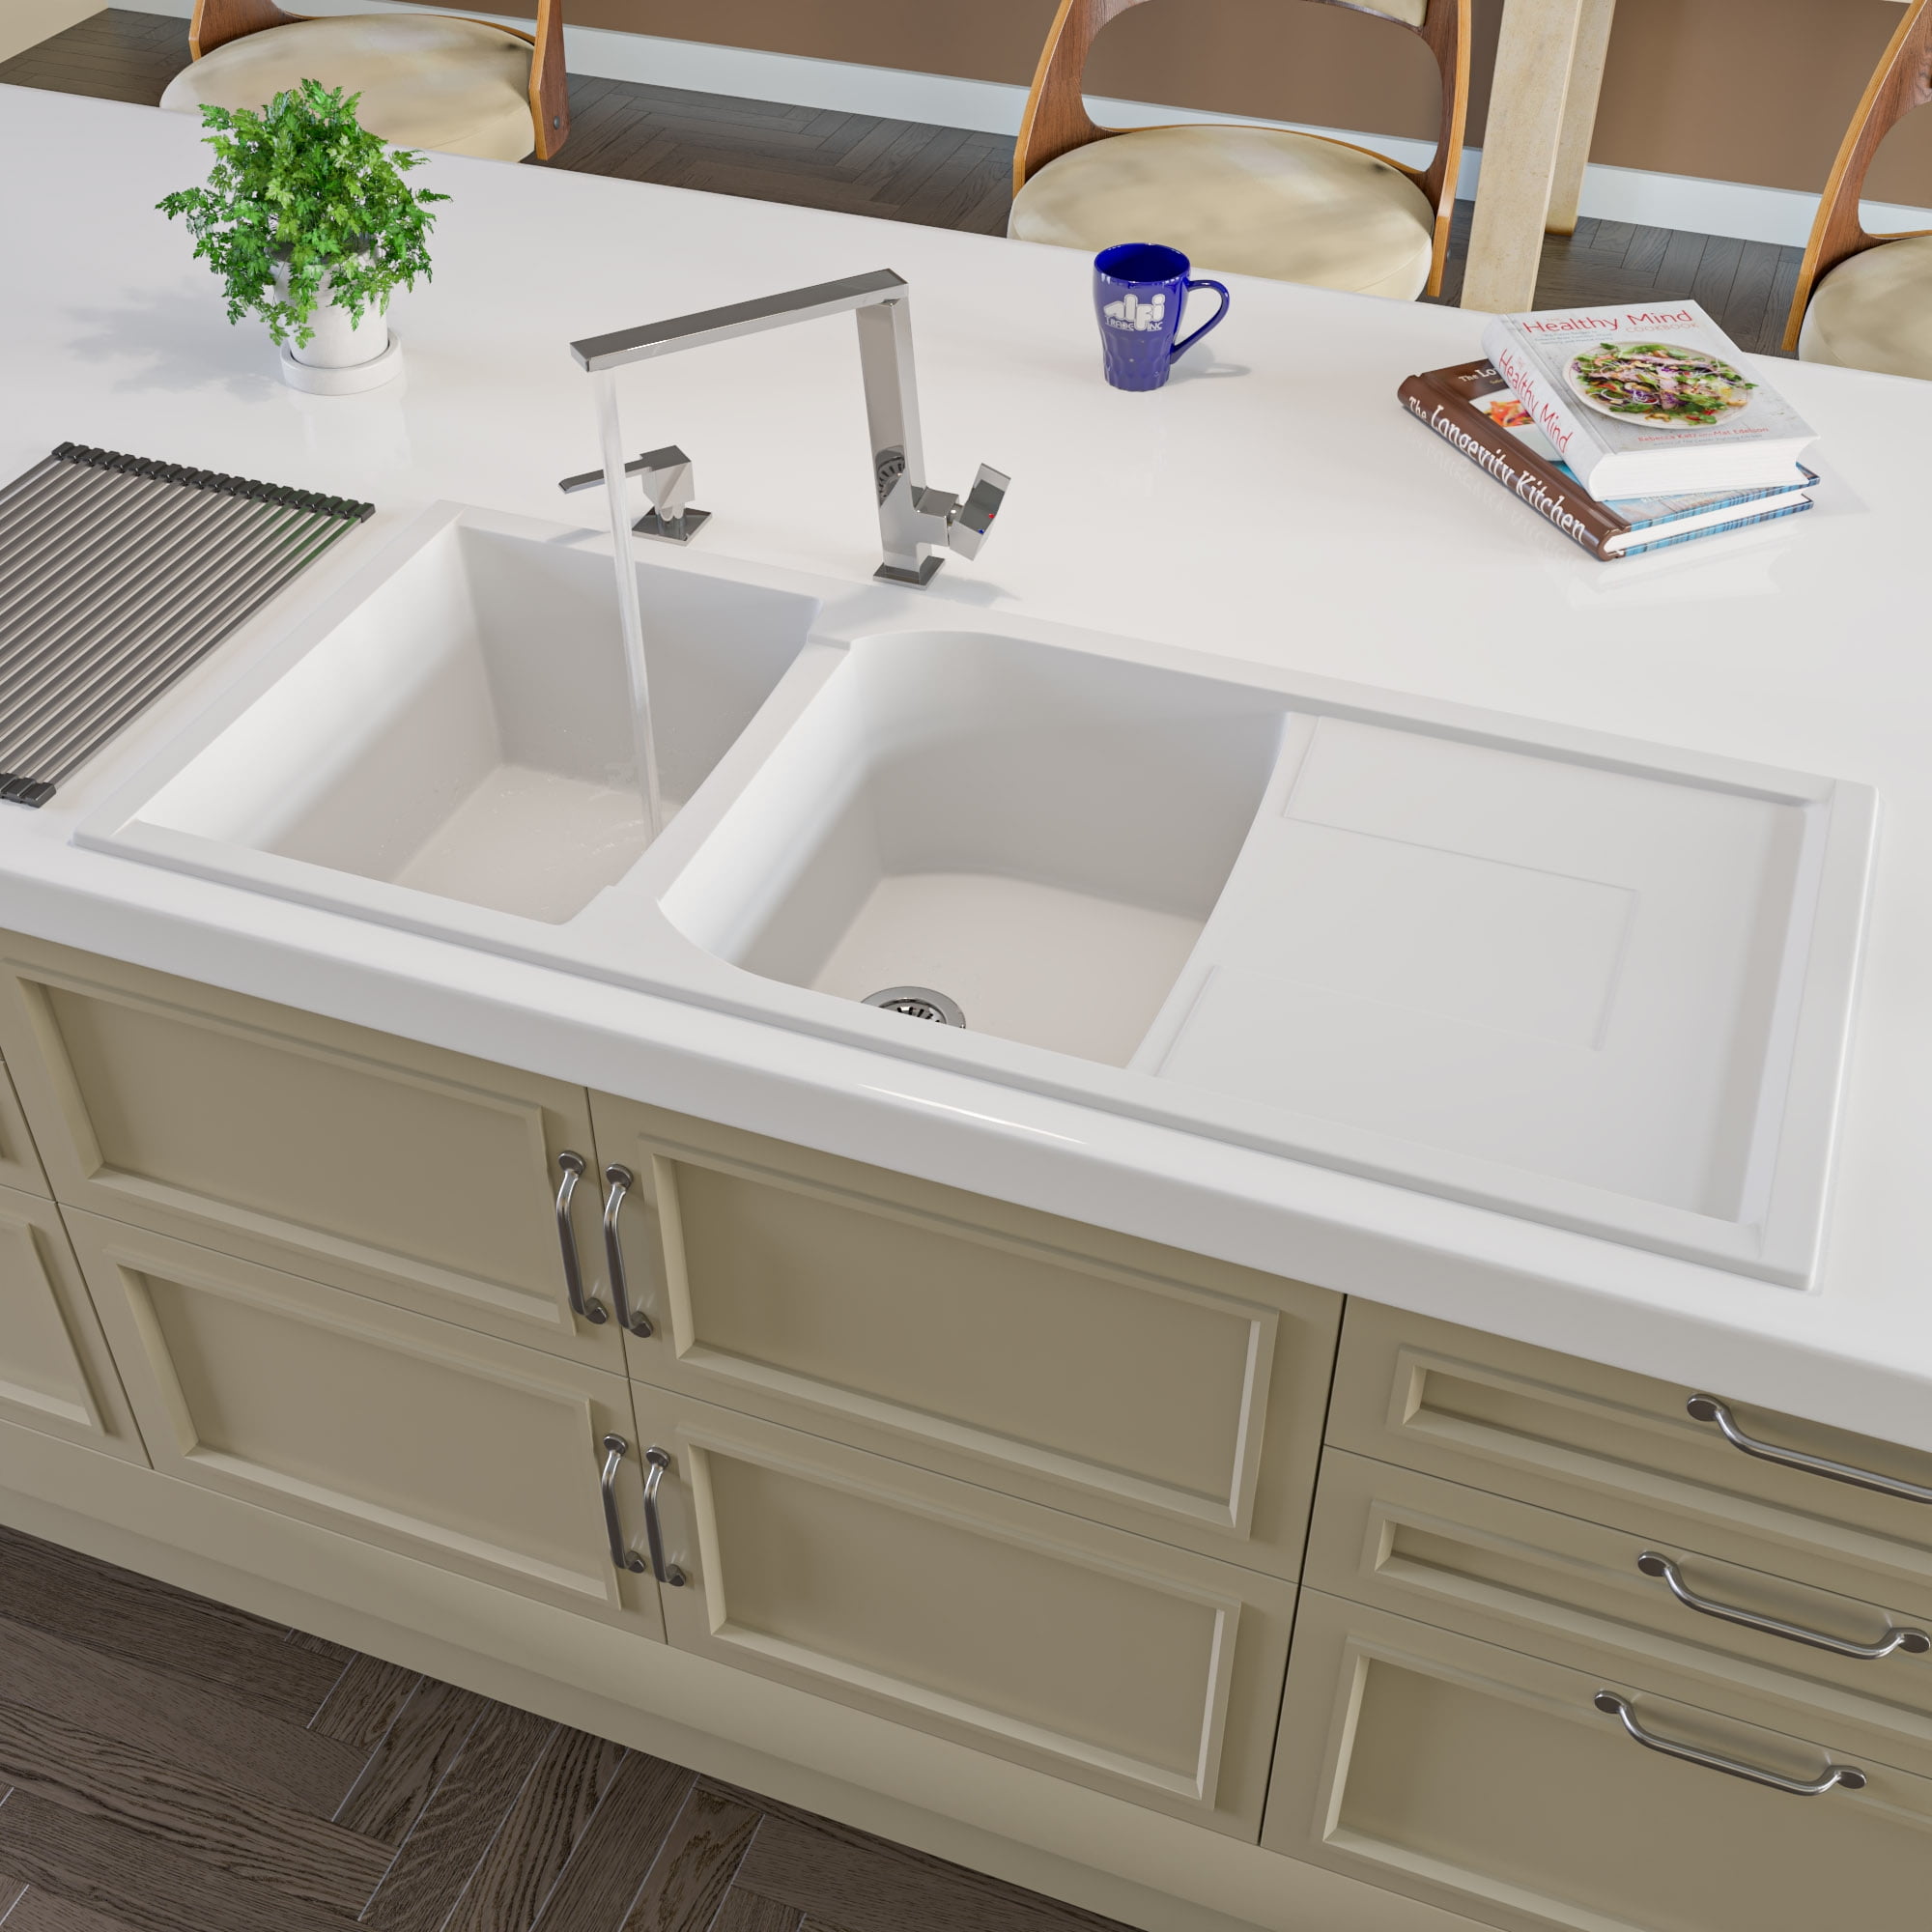 ALFI brand AB4620DI-W White 46" Double Bowl Granite Composite Kitchen